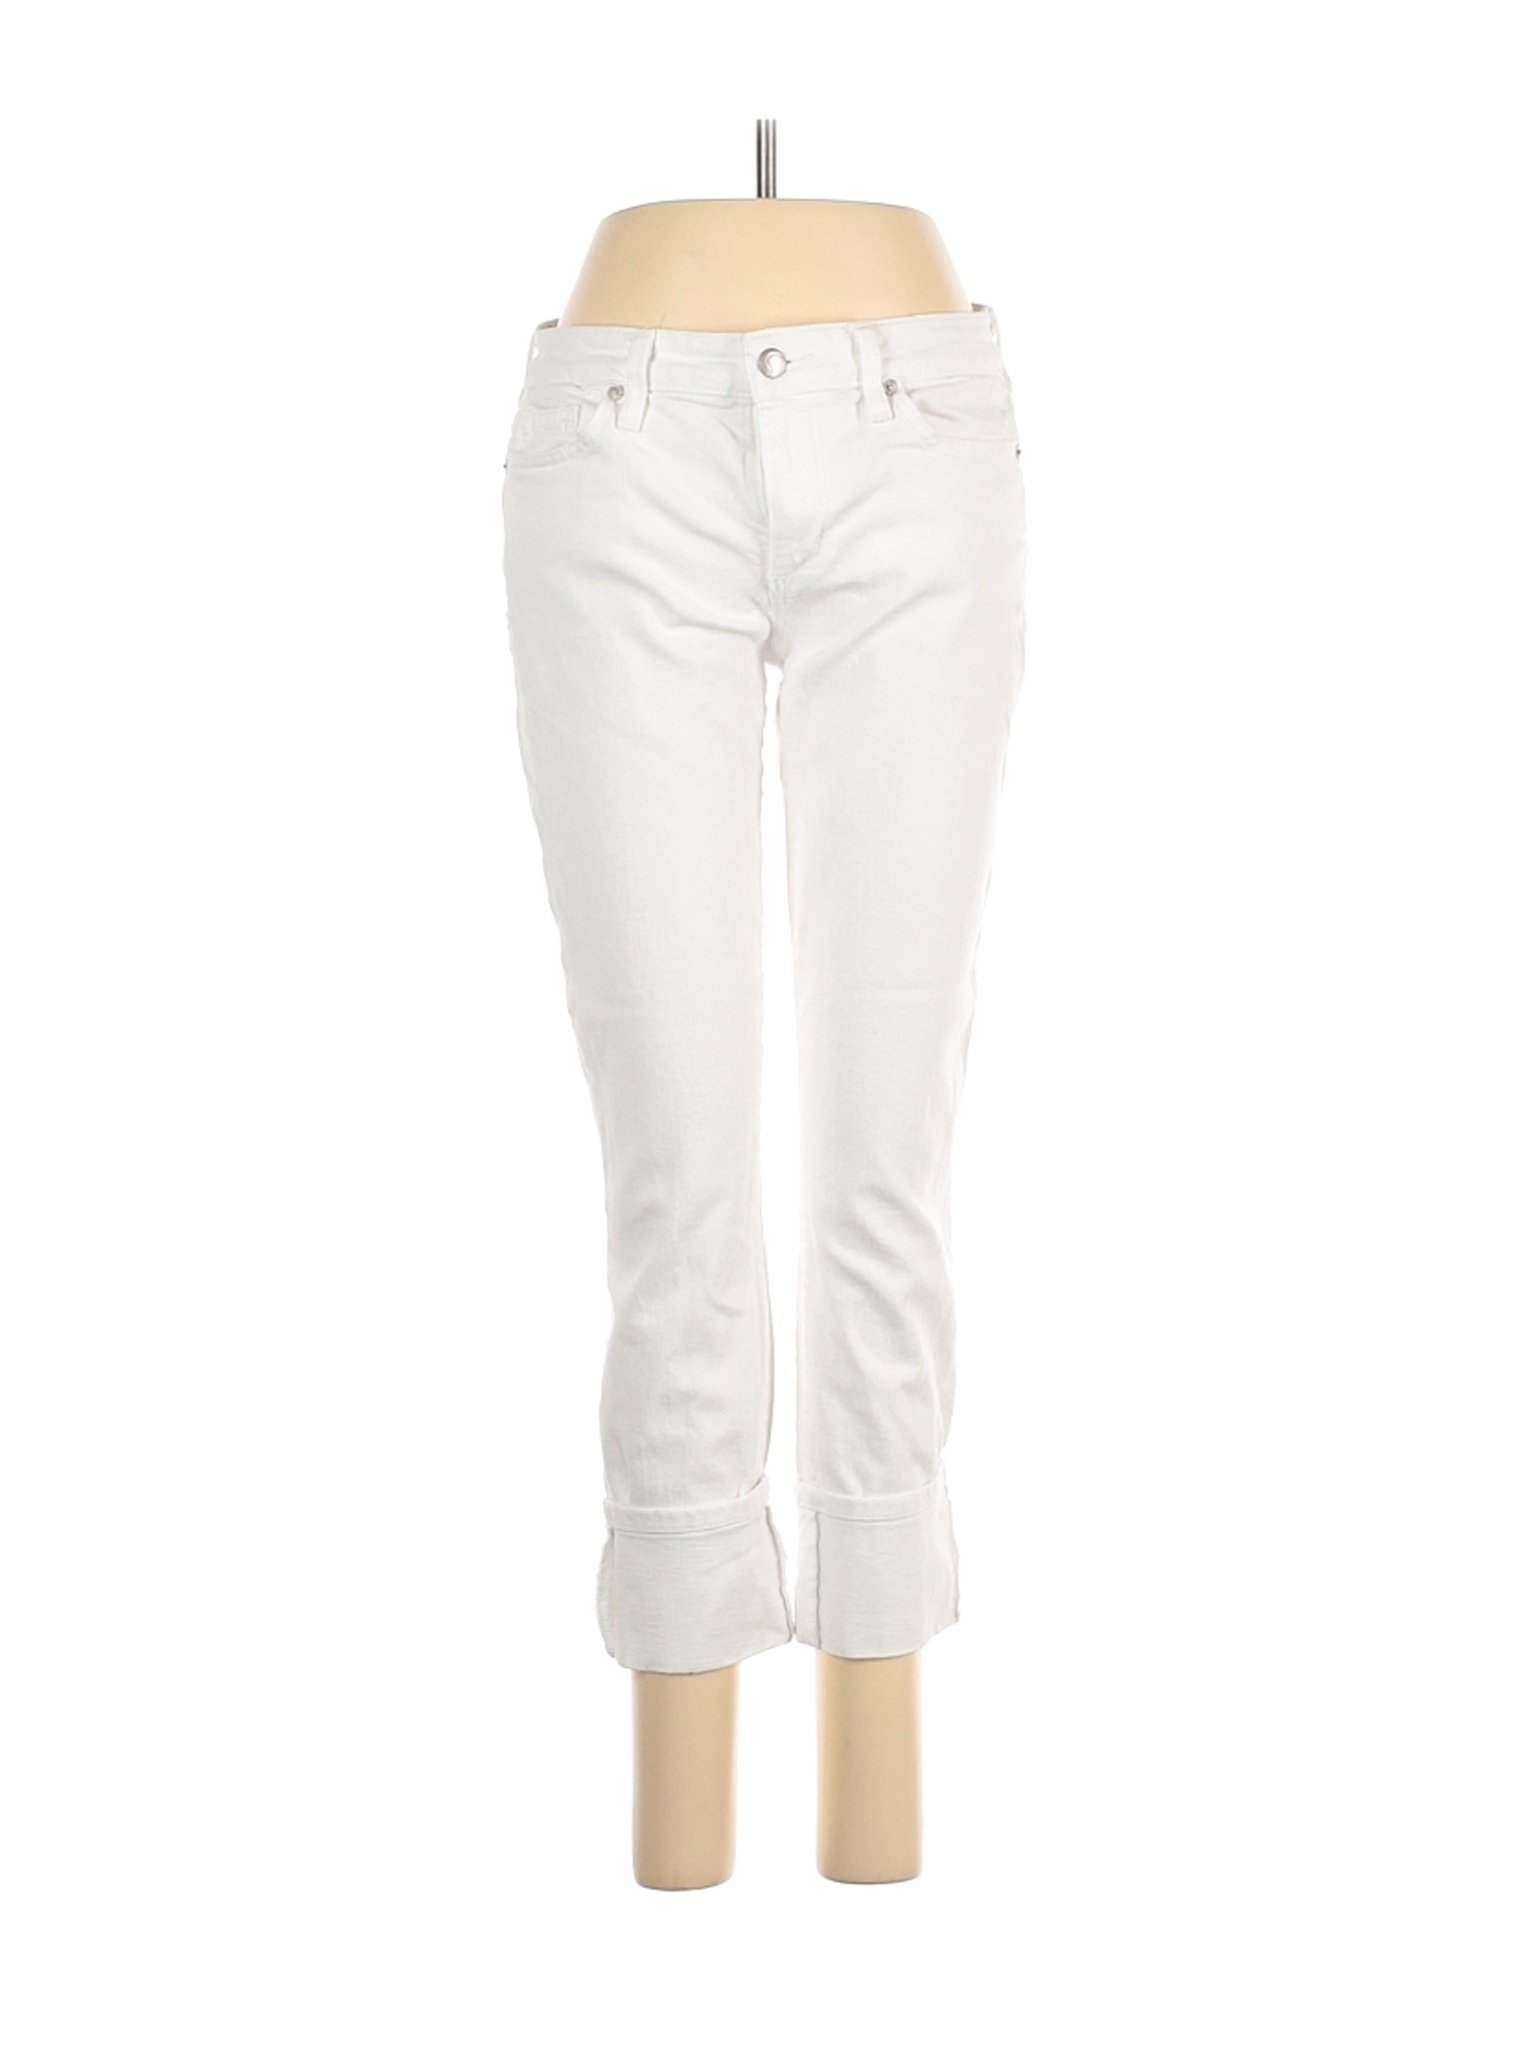 Joe's Jeans Women White Jeans 28W | eBay